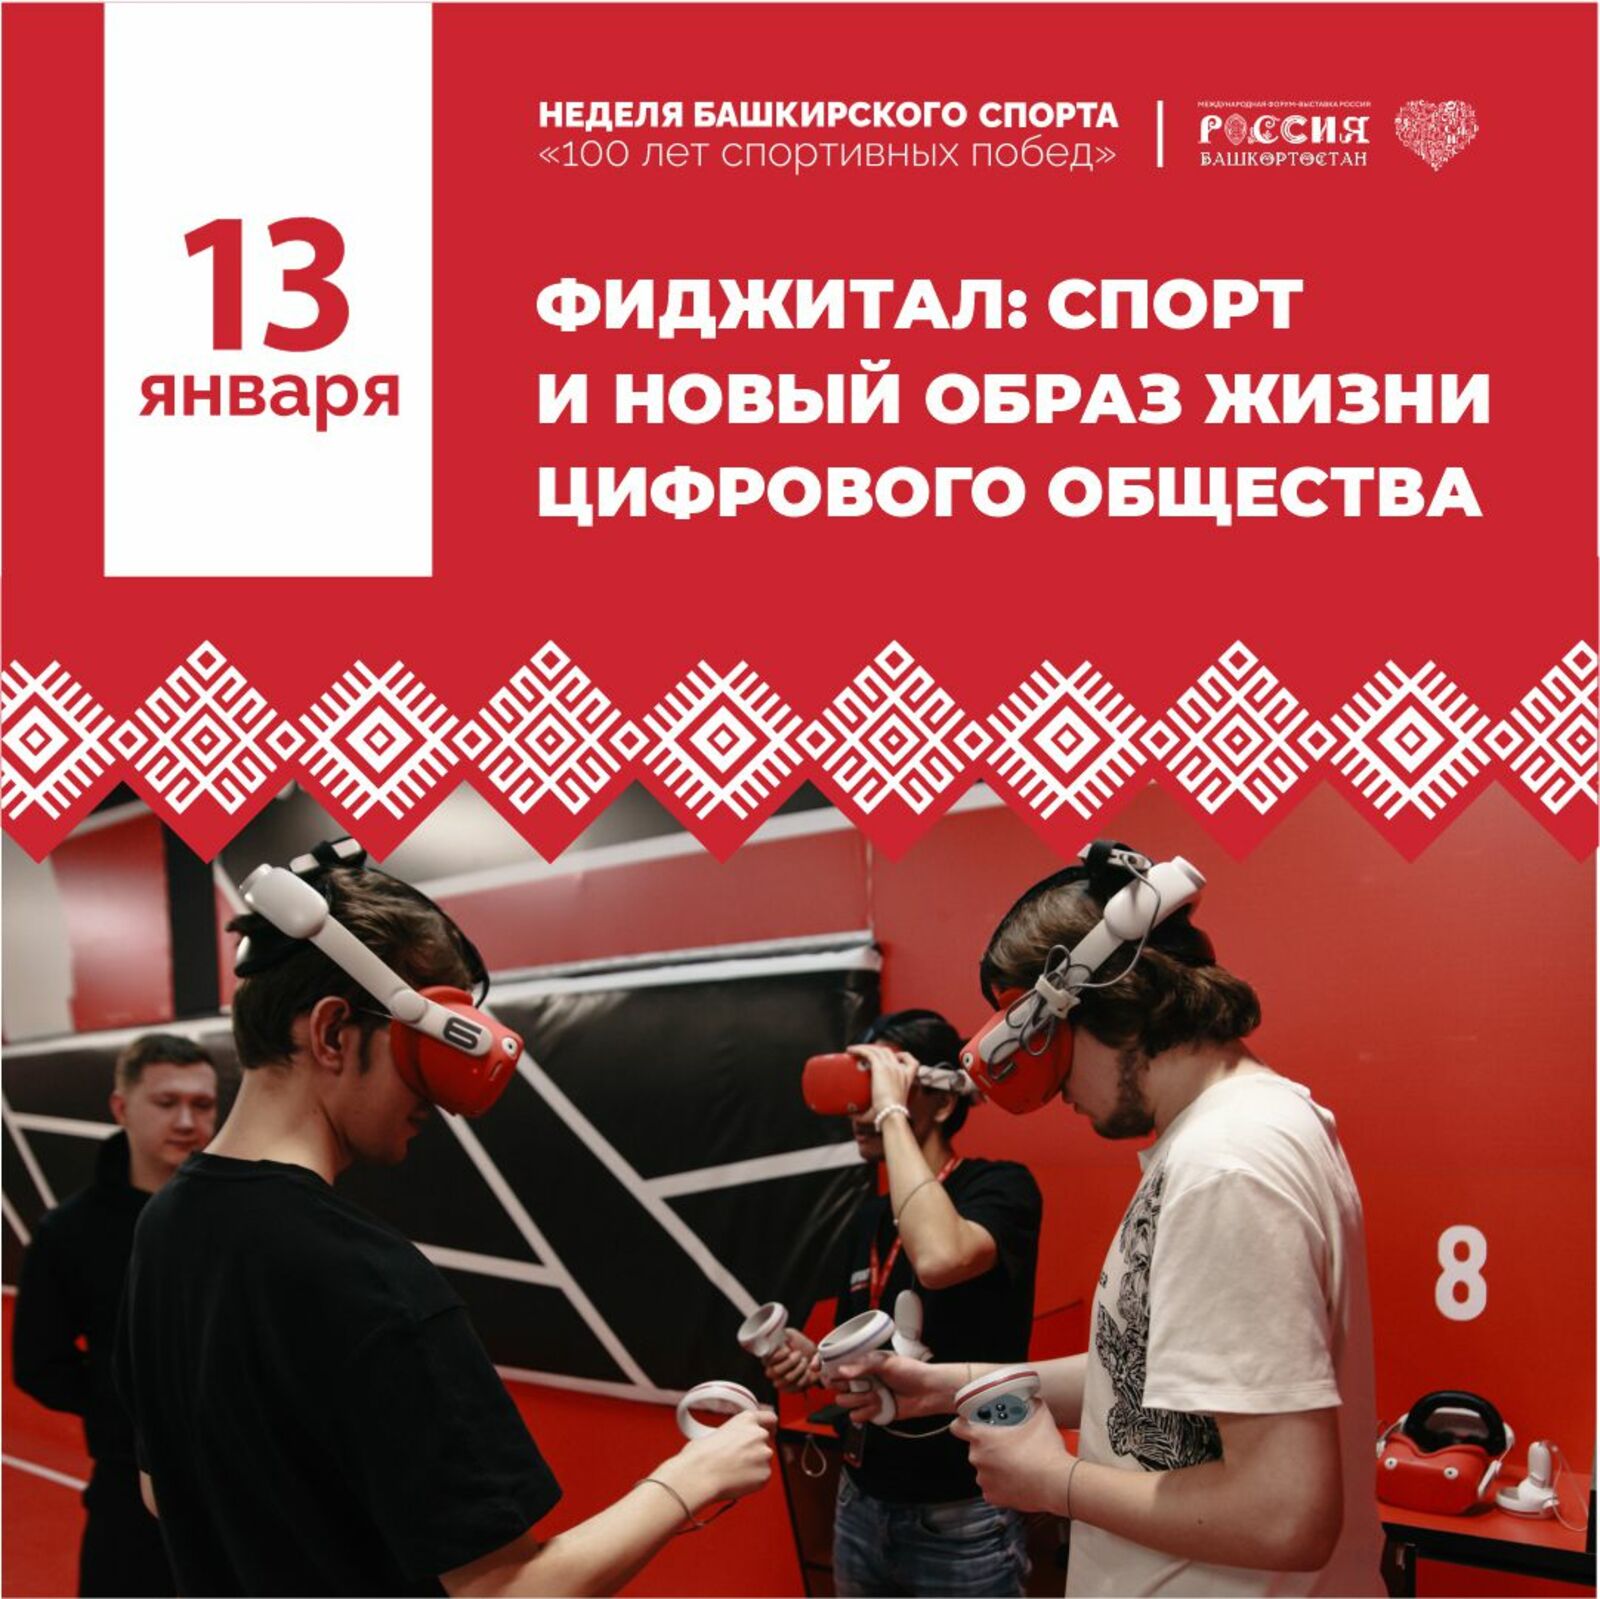 В Москве на ВДНХ пройдет неделя башкирского спорта